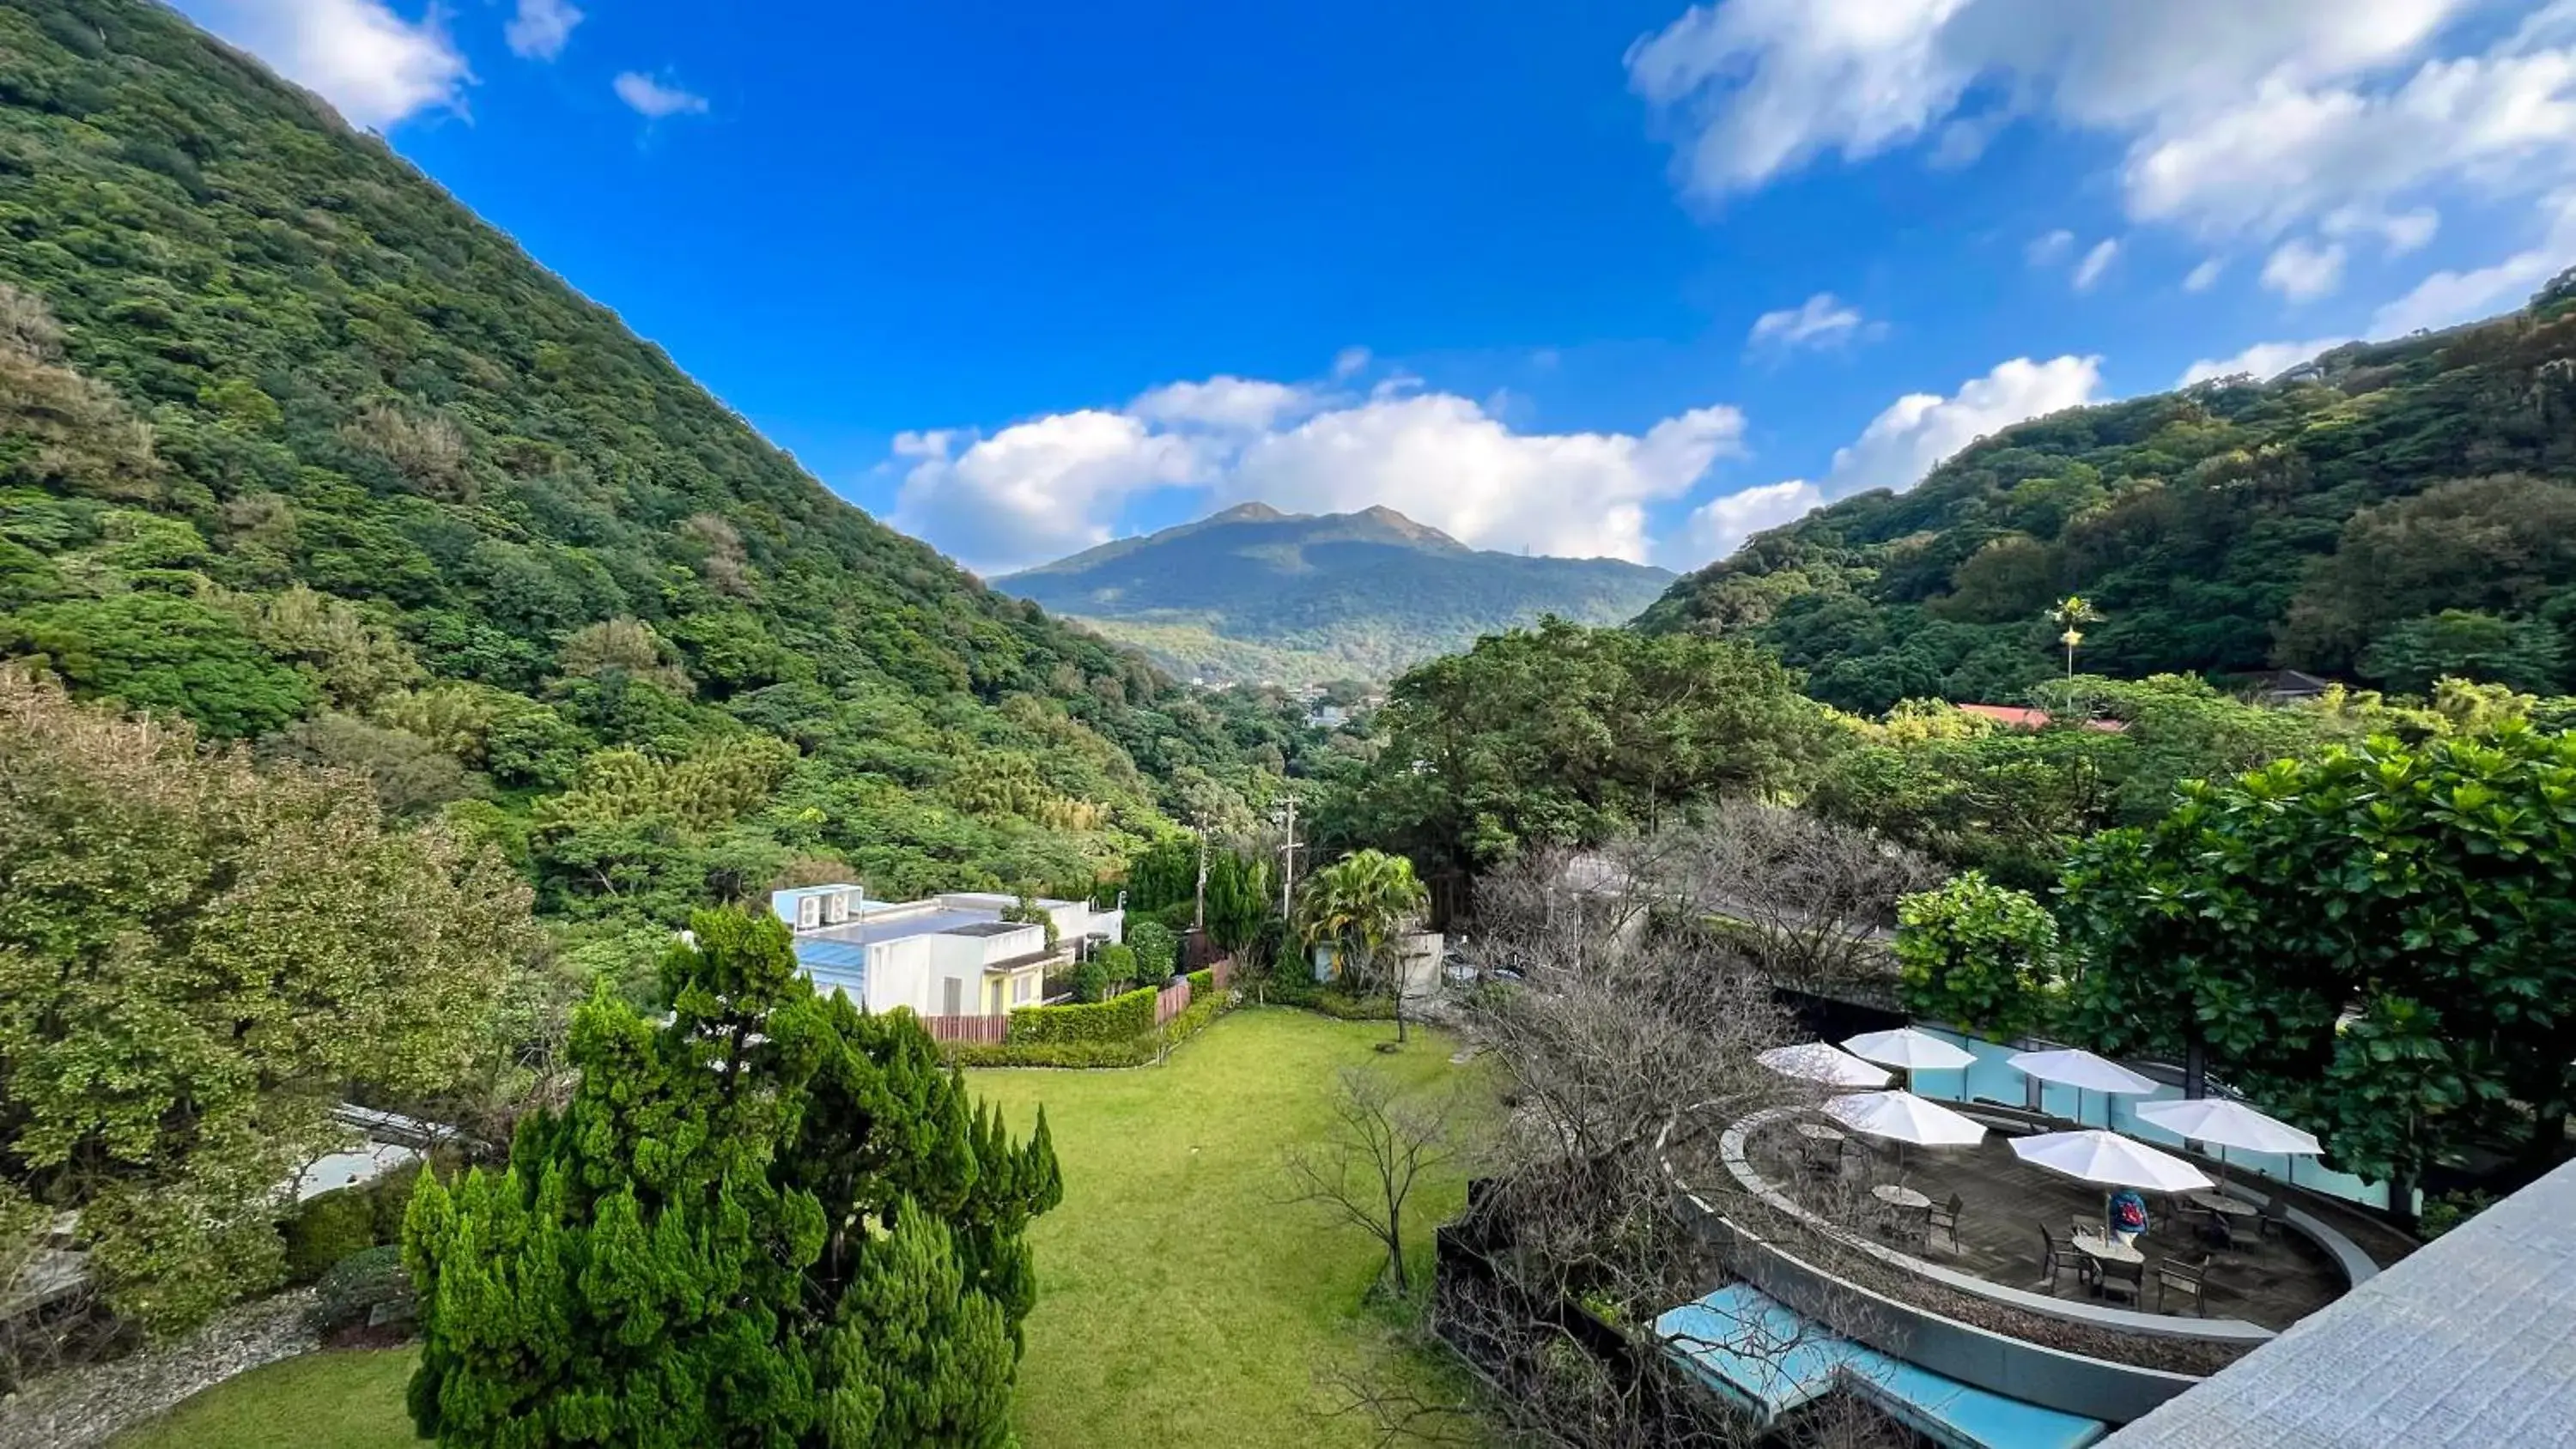 Mountain view in Landis Resort Yangmingshan